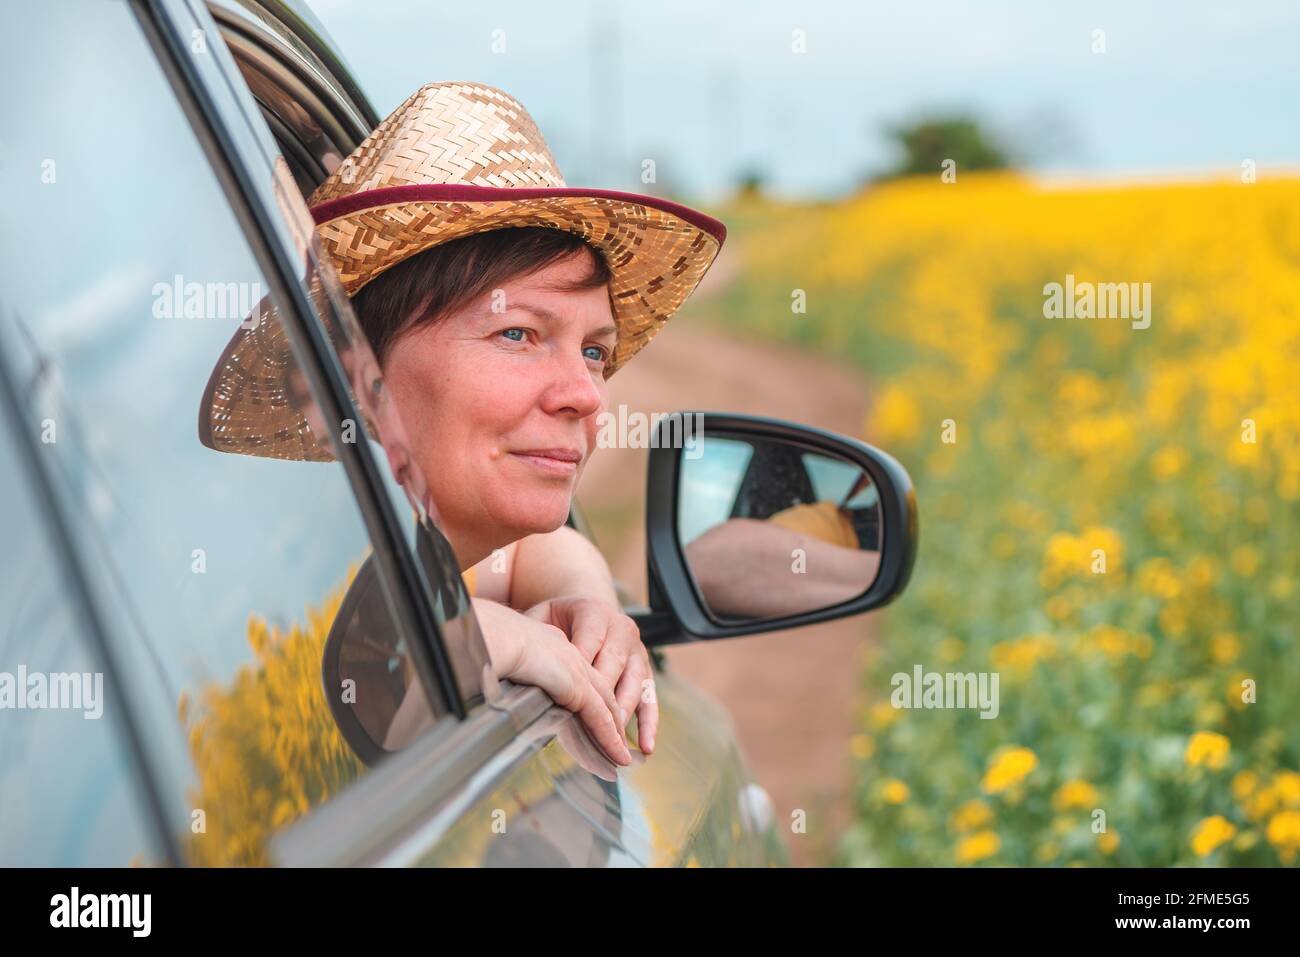 Donna che ama viaggiare in auto in un paesaggio fiorente della campagna estiva, testa con cappello di paglia che raggiunge il finestrino, fuoco selettivo Foto Stock